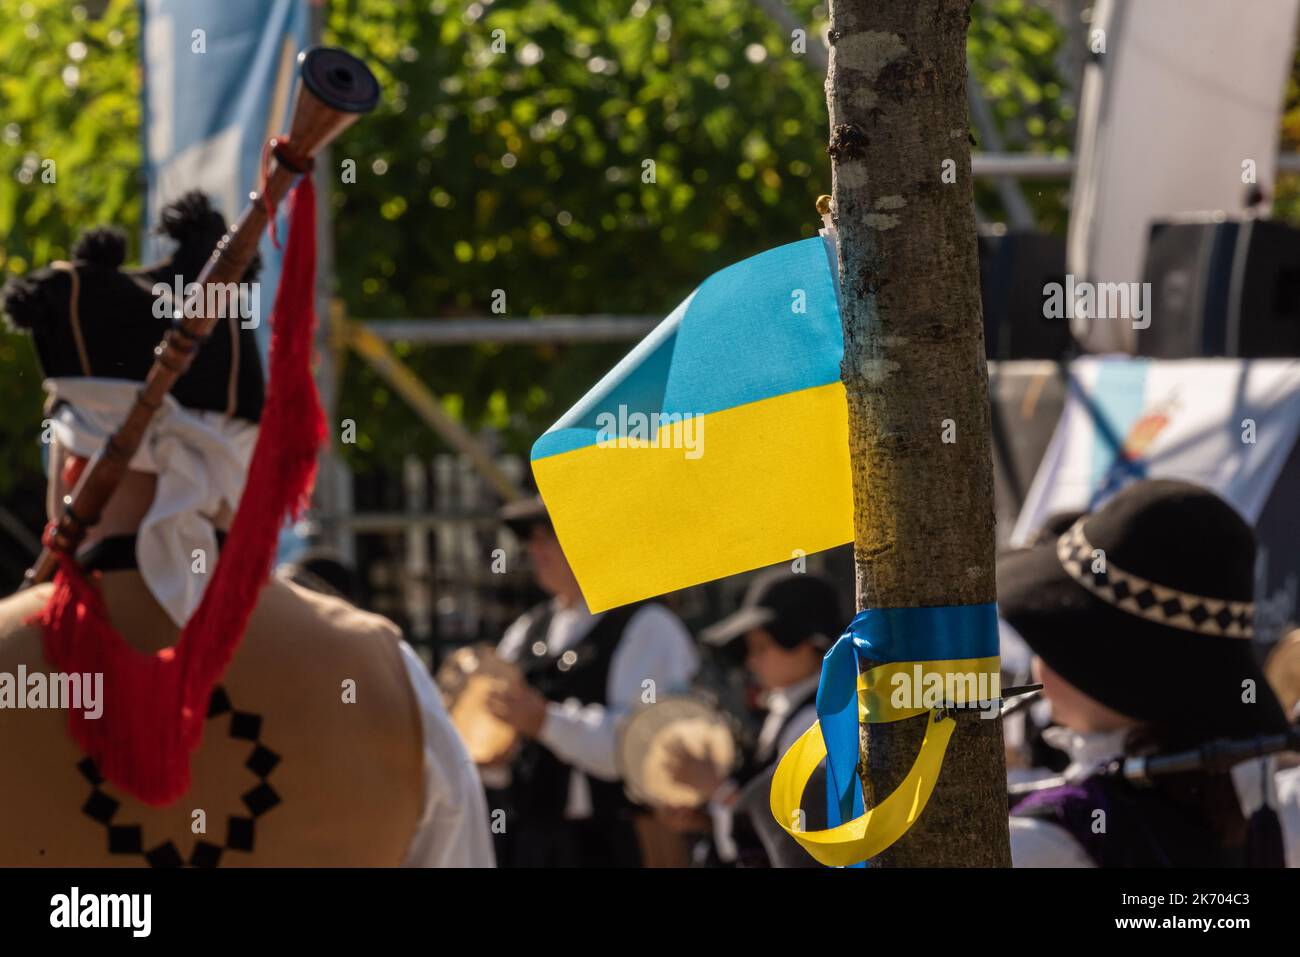 Bandiera Ucraina con bagpipers e musica tradizionale galiziana in un evento di beneficenza Foto Stock